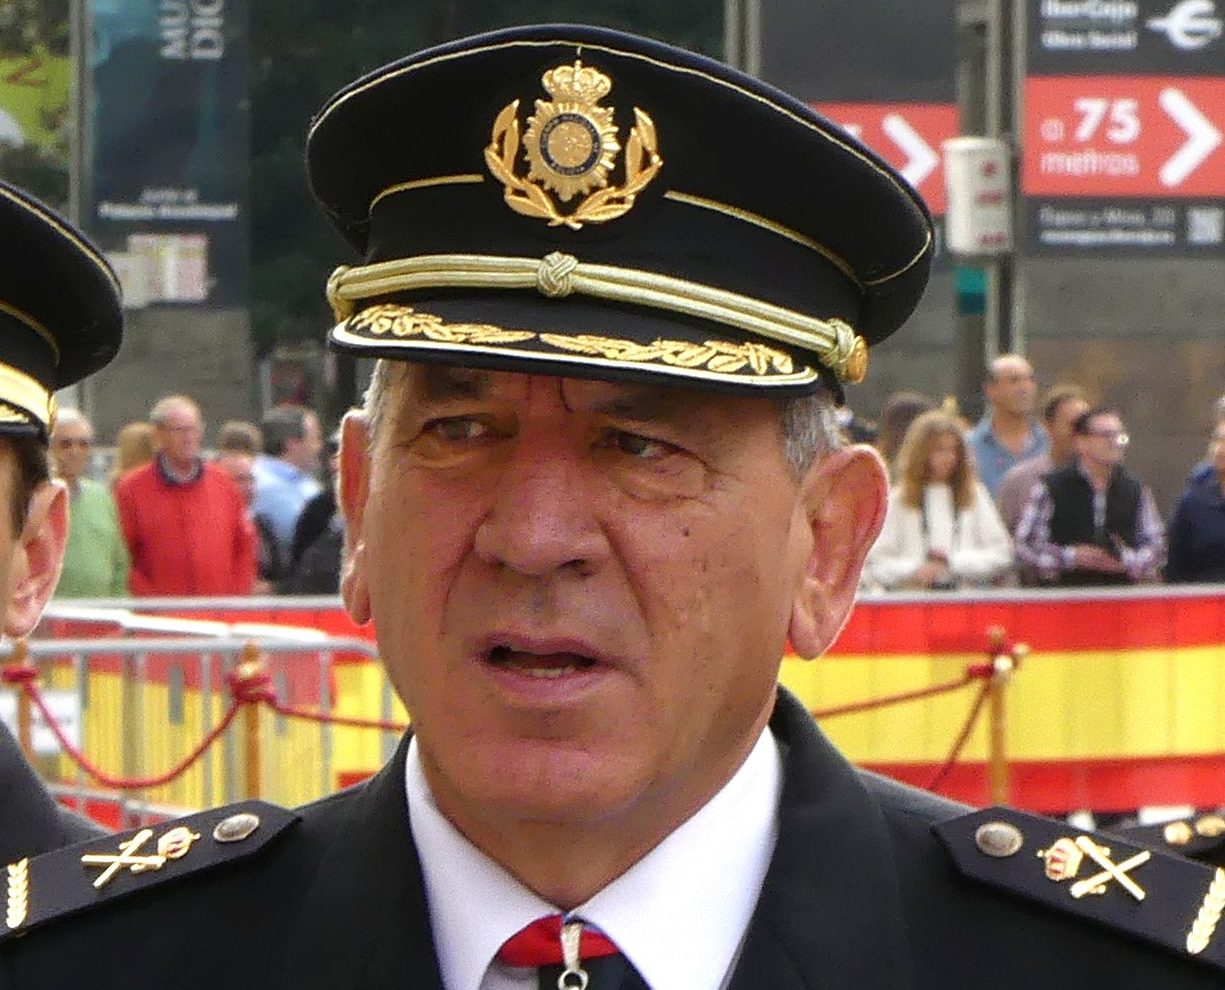 José Ángel nuevo adjunto operativo de la Policía Nacional